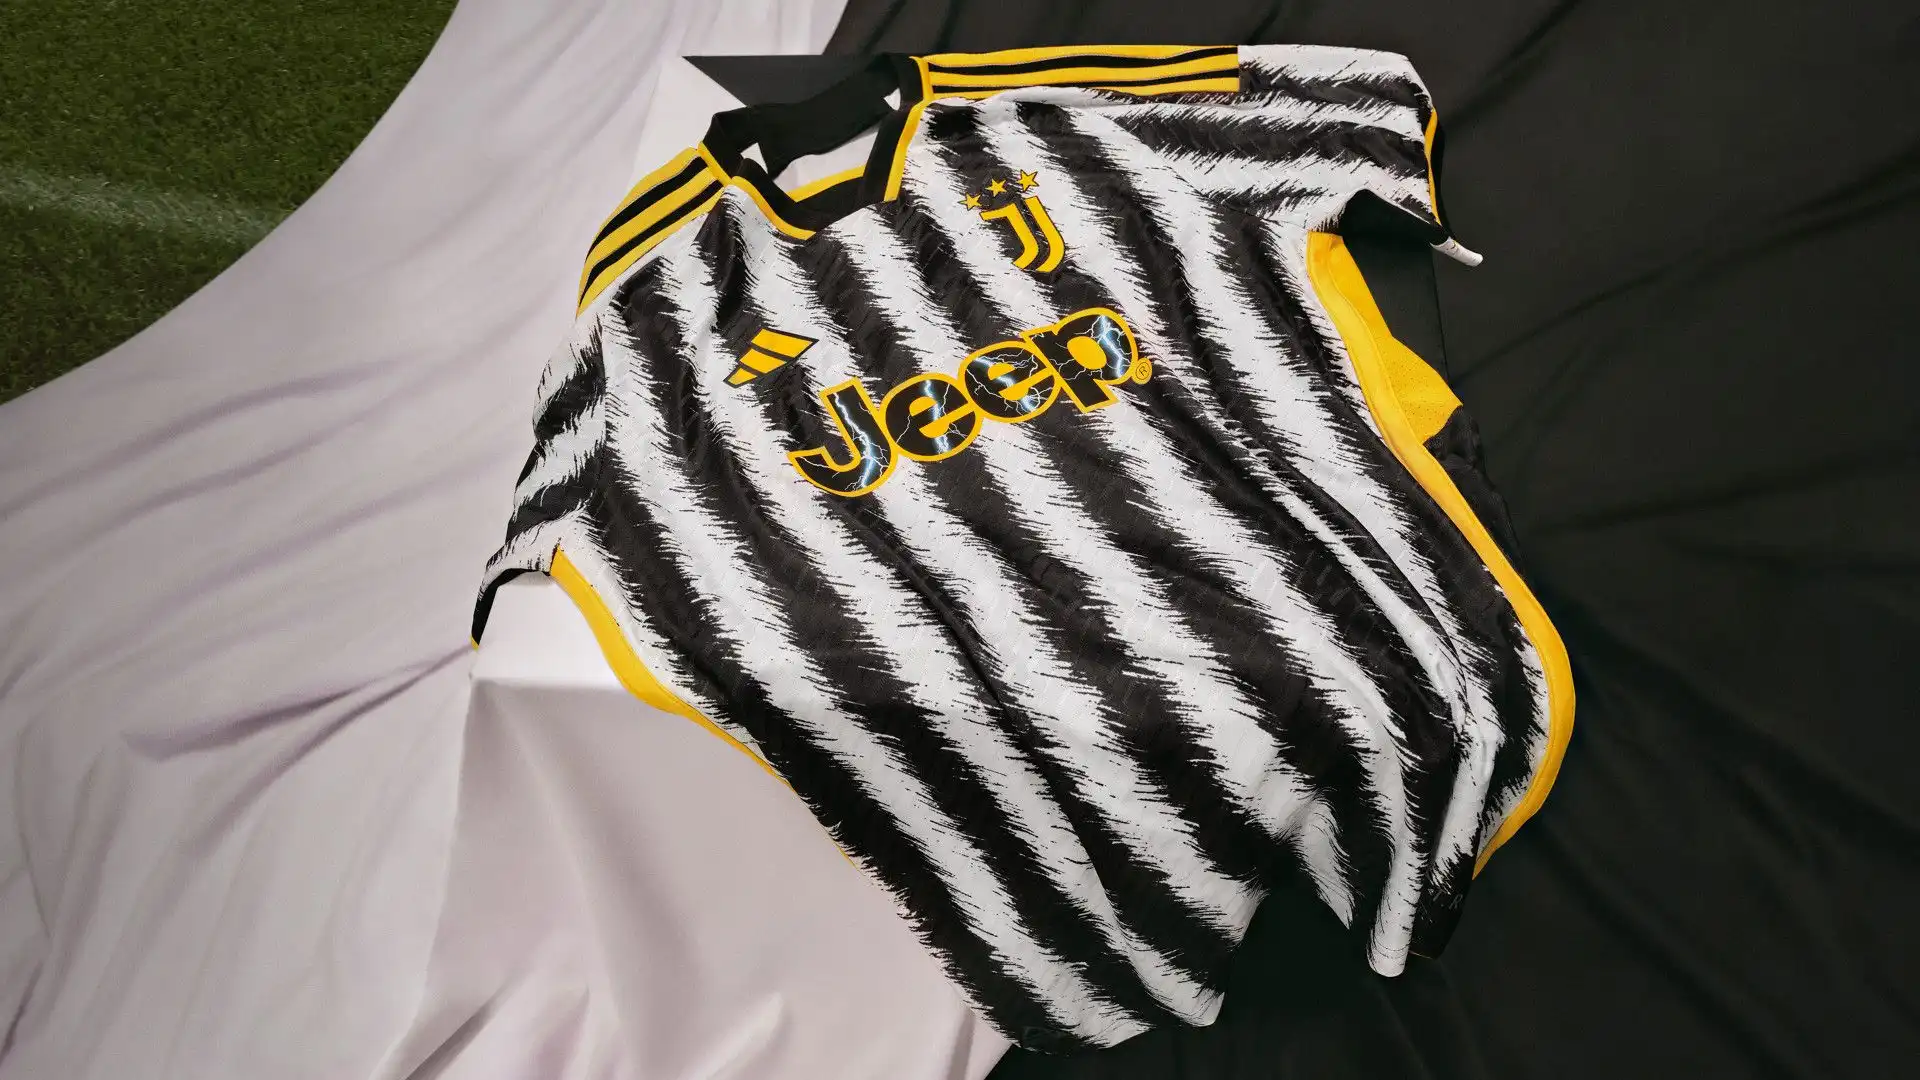 Lo stile della maglia è caratterizzato dalla celebrazione delle inconfondibili strisce bianconere della Juventus